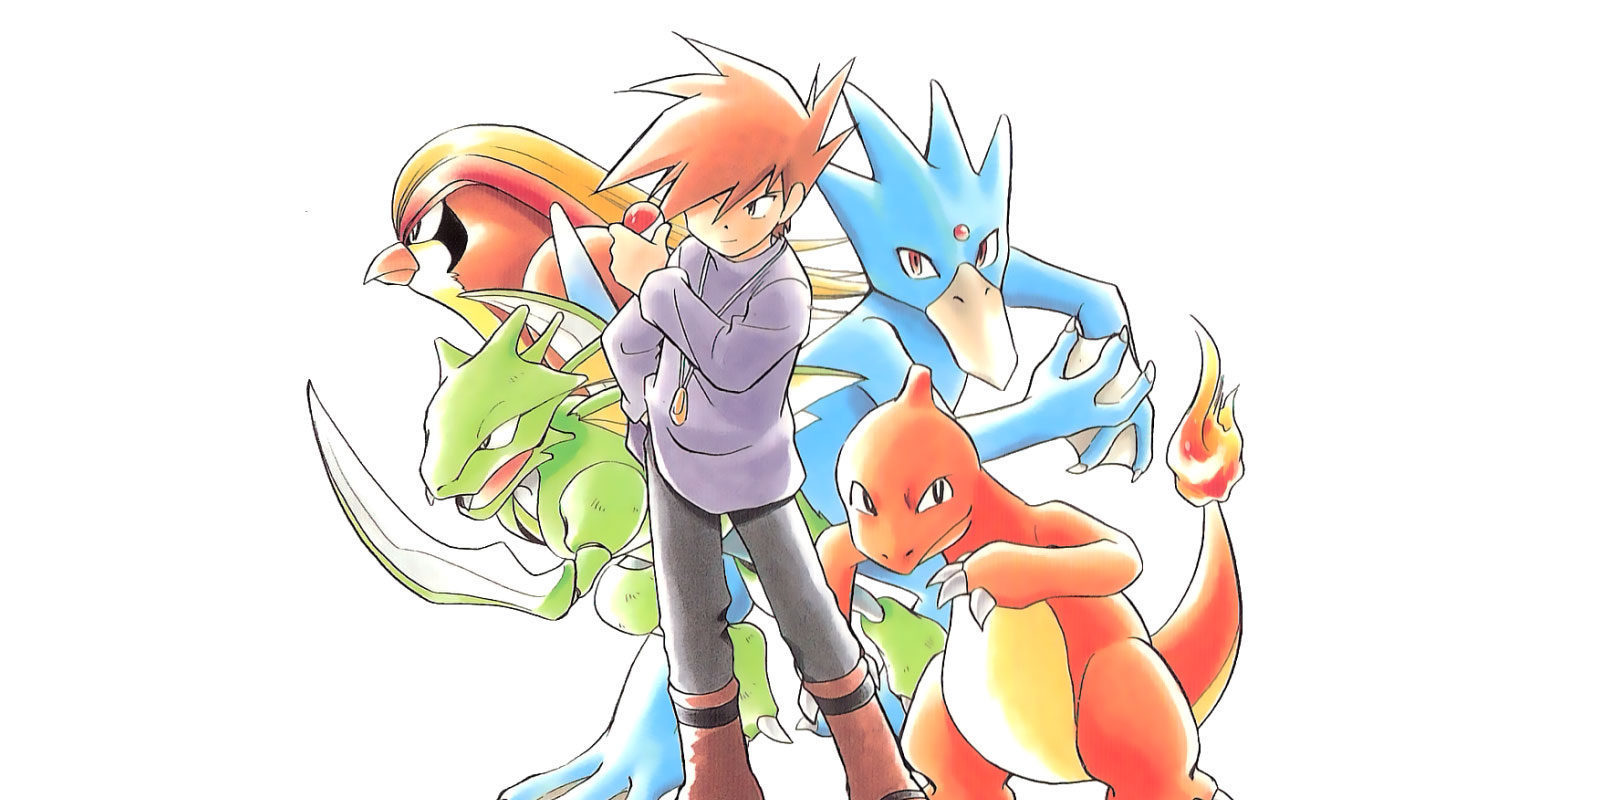 Con Switch jugaremos a Pokémon desde casa, según GameStop